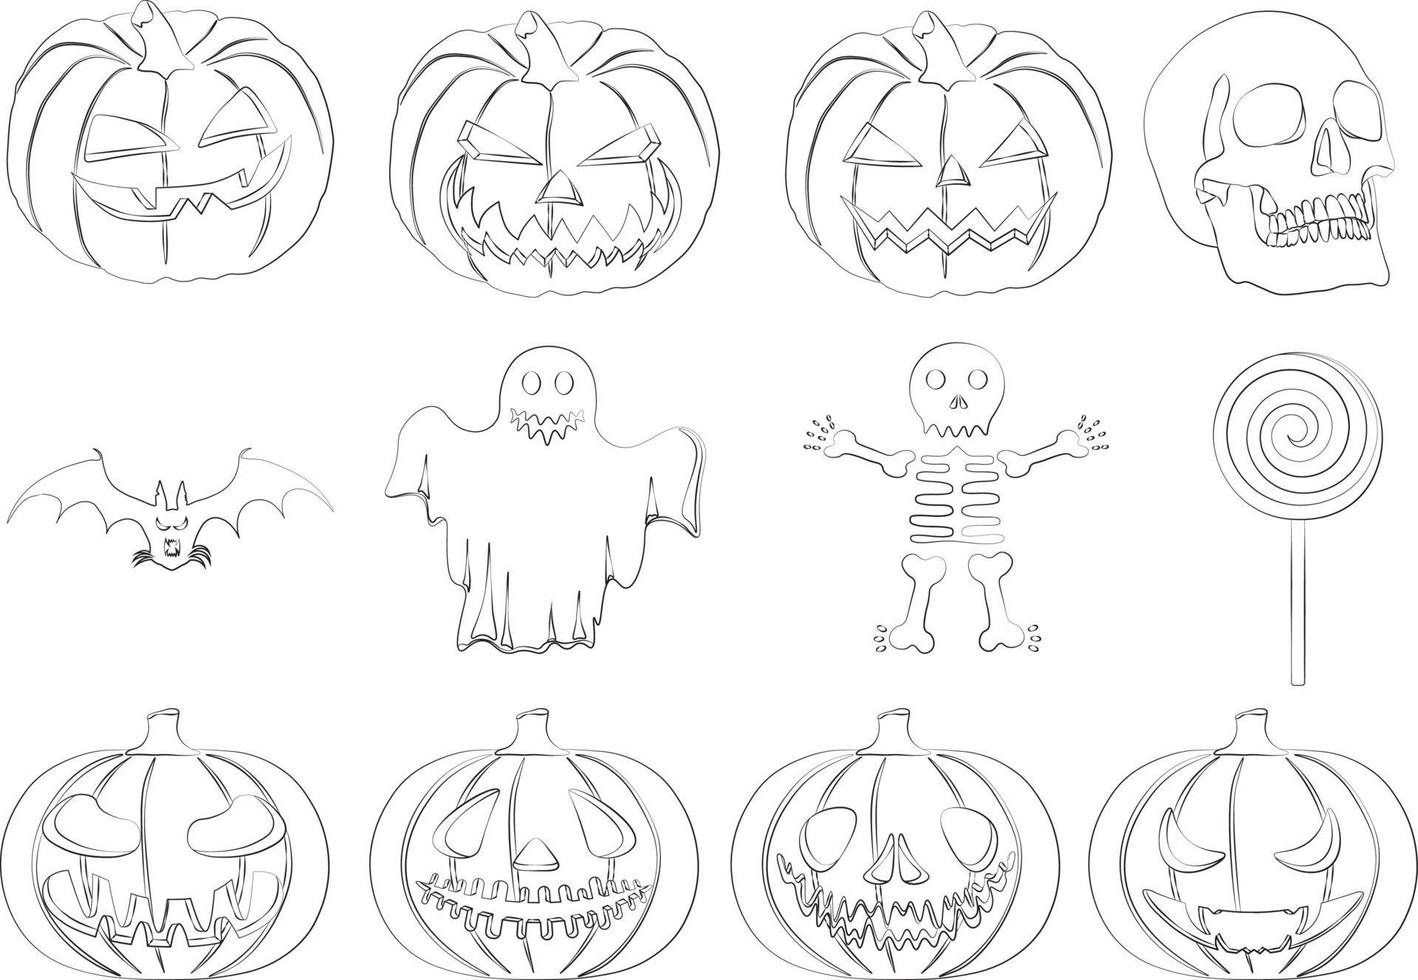 Calabazas de Halloween, calavera, murciélago, esqueleto, fantasma y siluetas de piruletas ilustración vectorial vector